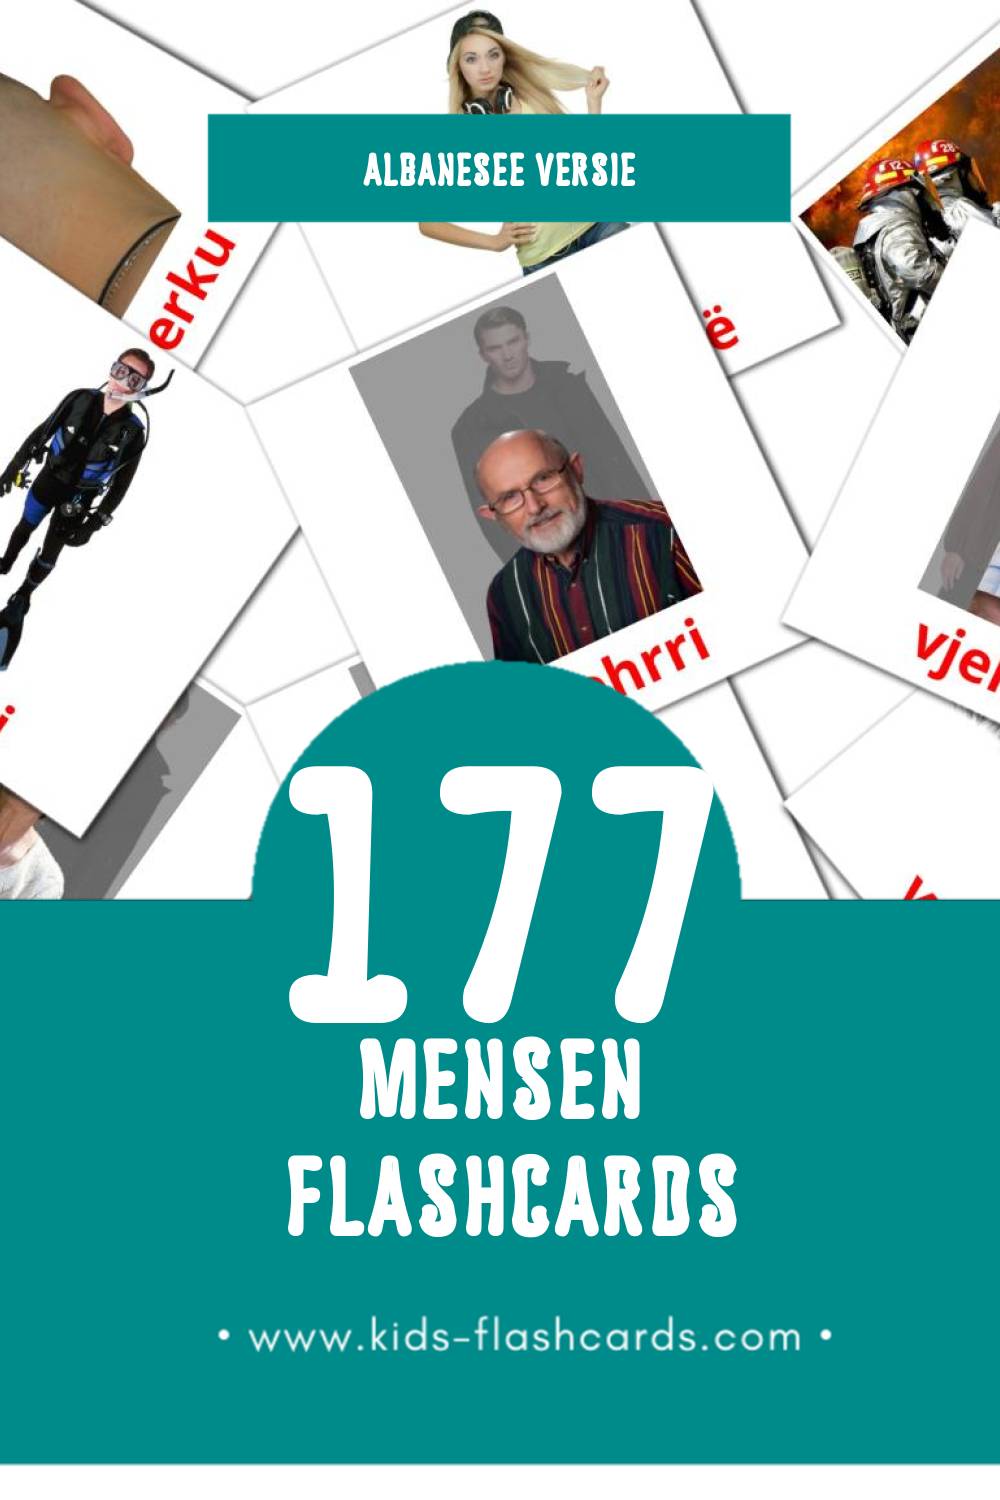 Visuele Njerez Flashcards voor Kleuters (177 kaarten in het Albanese)